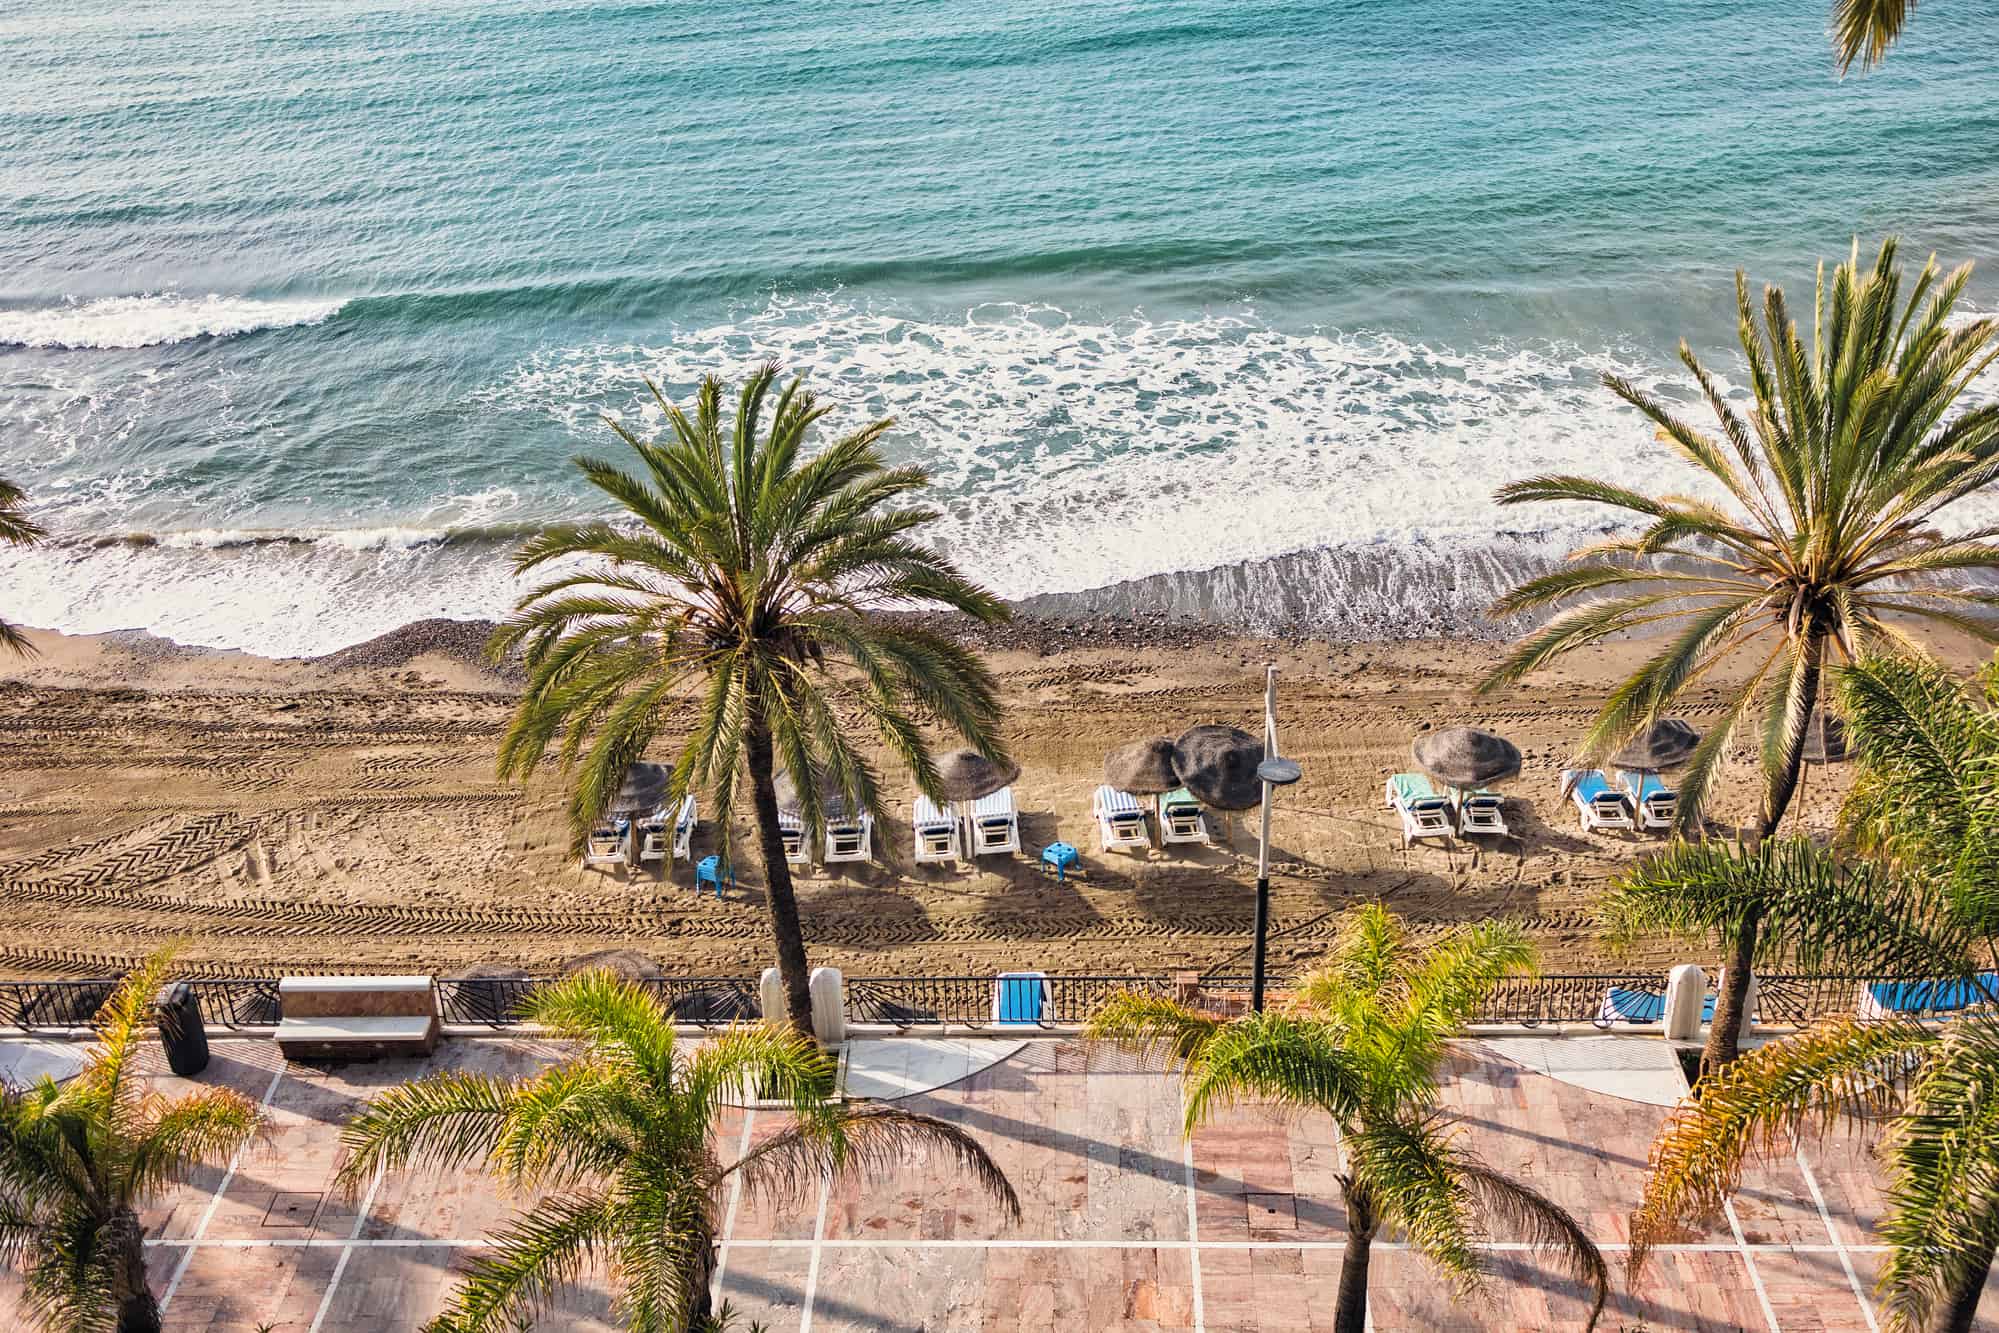 Panoramic view of Marbella promenade and beach, Spain resort